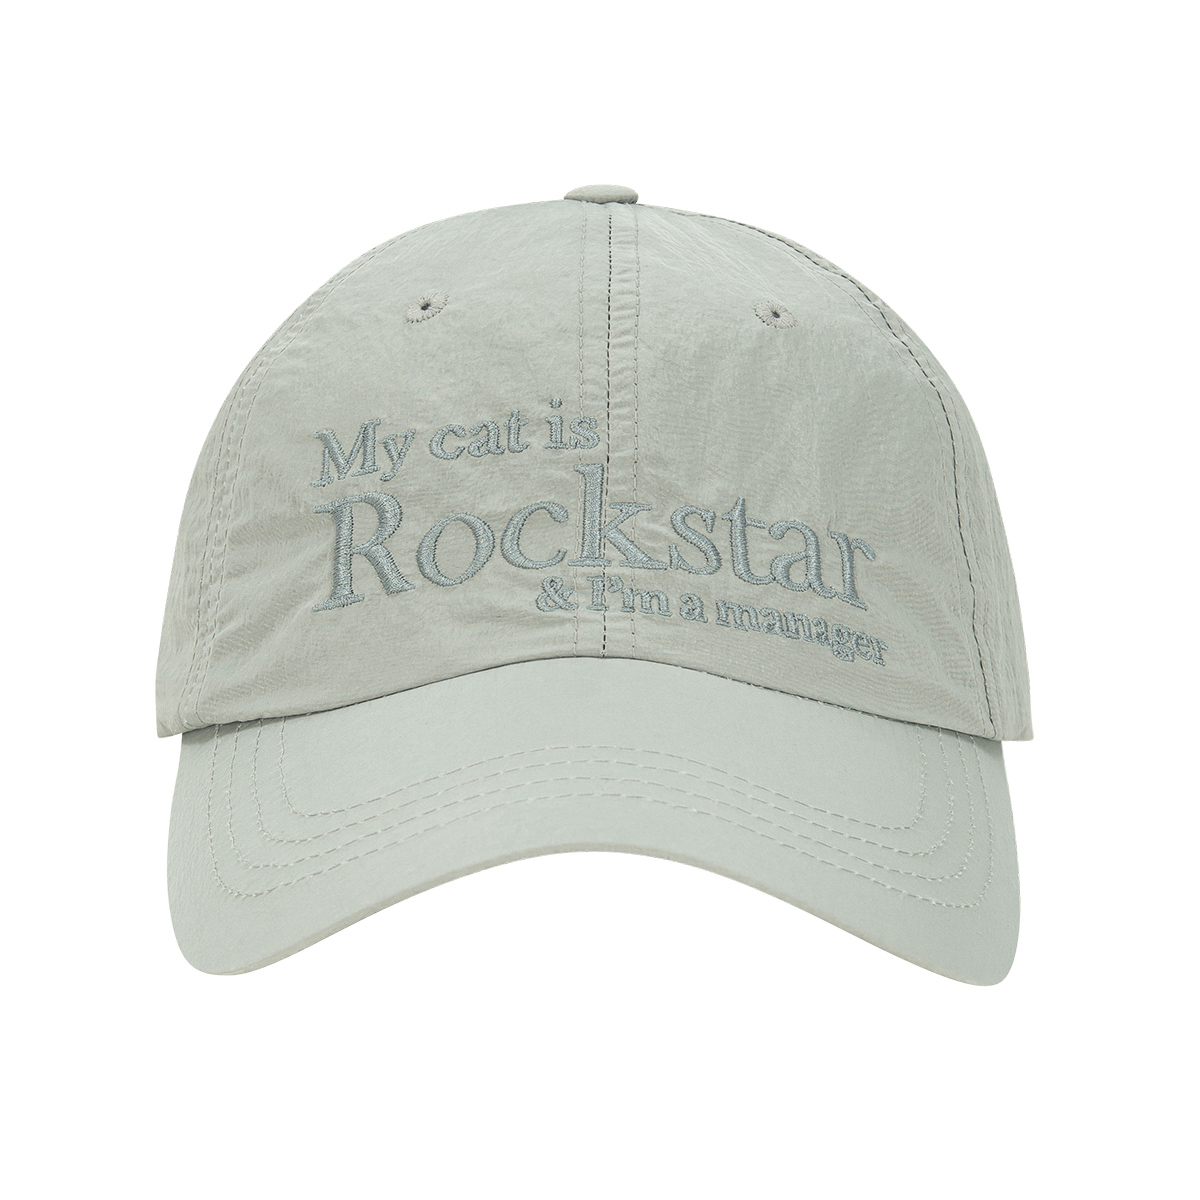 Rockstar cat Nylon cap (Light grey)